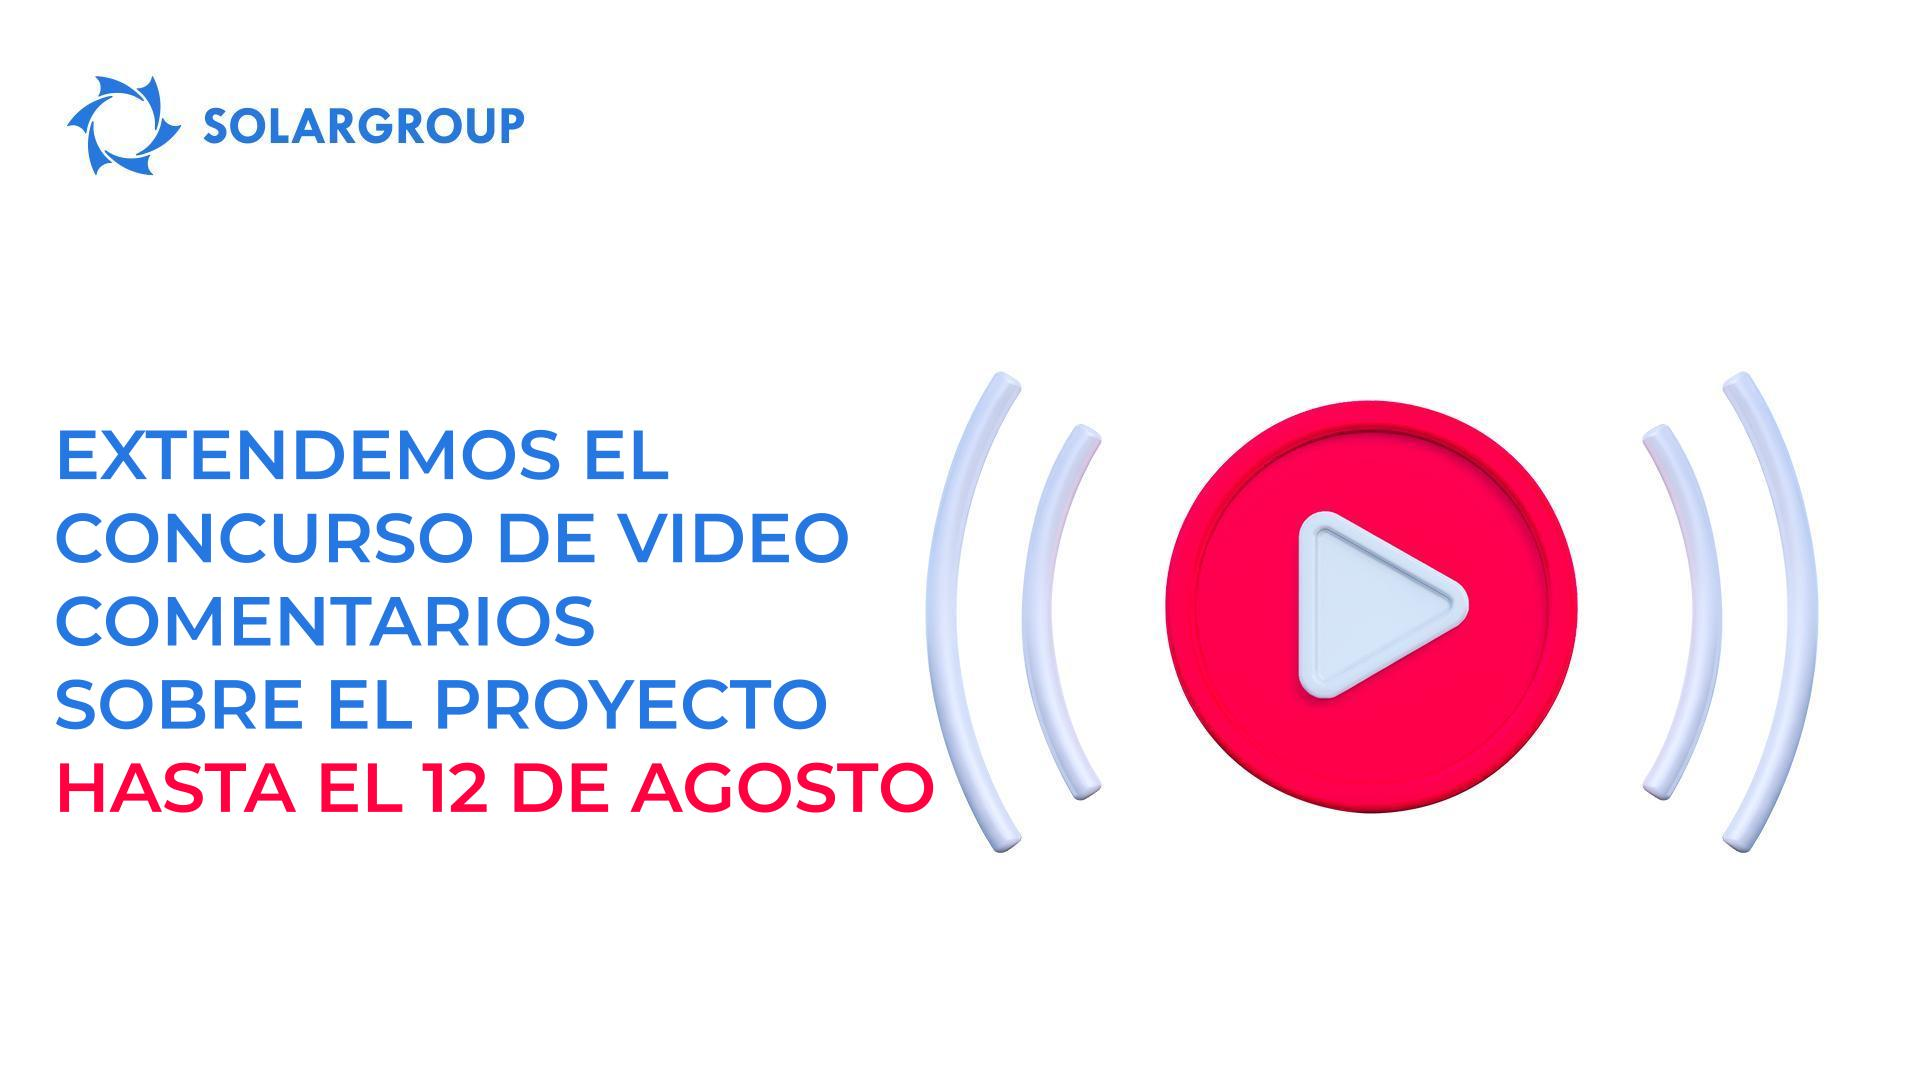 Extendemos hasta el 12 de agosto el concurso de video comentarios sobre el proyecto